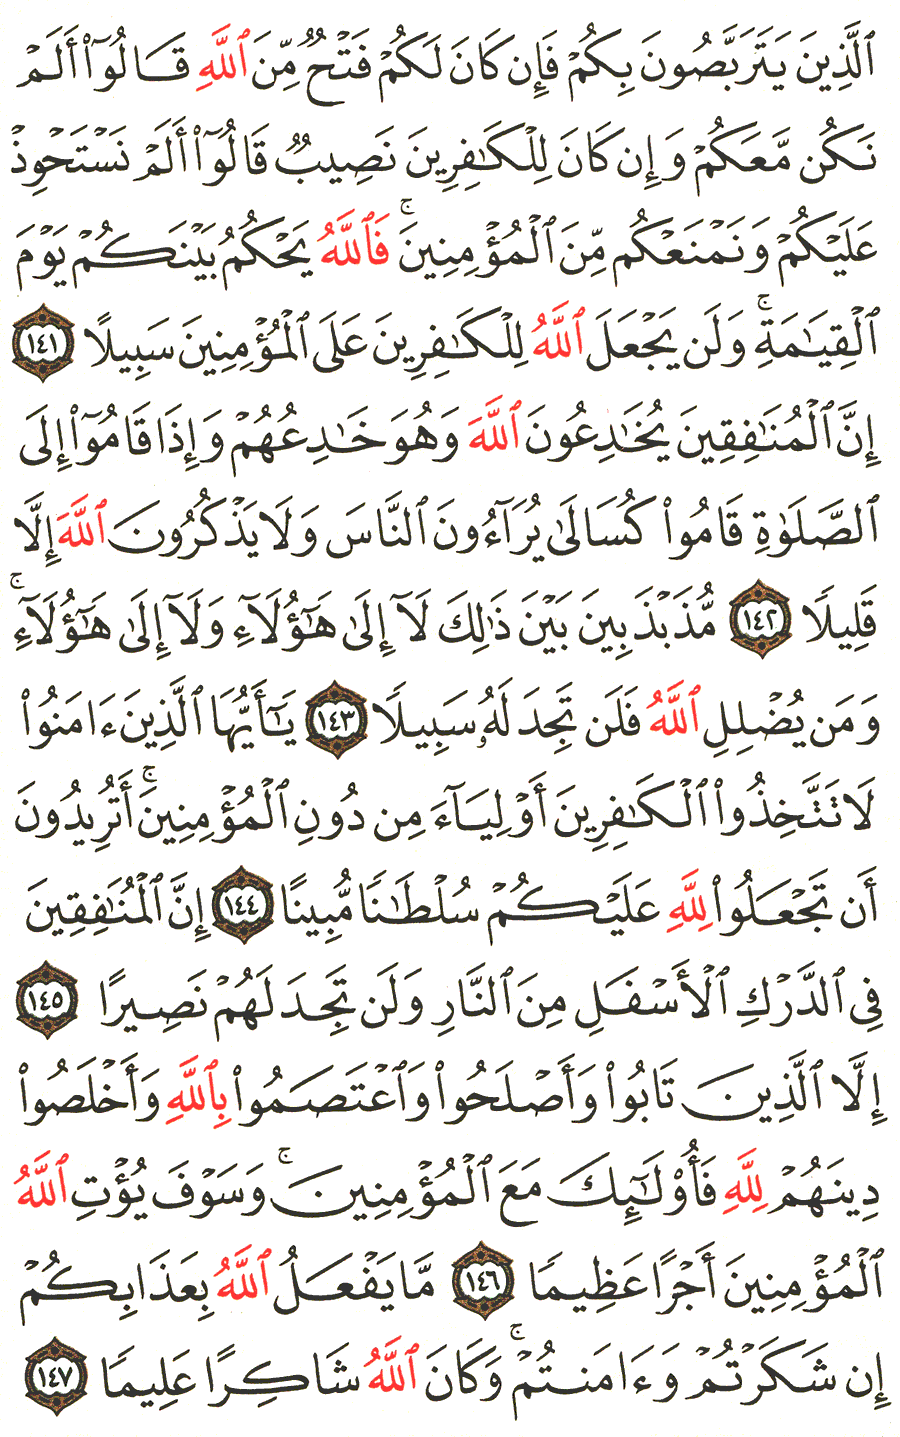 الصفحة 101 من القرآن الكريم